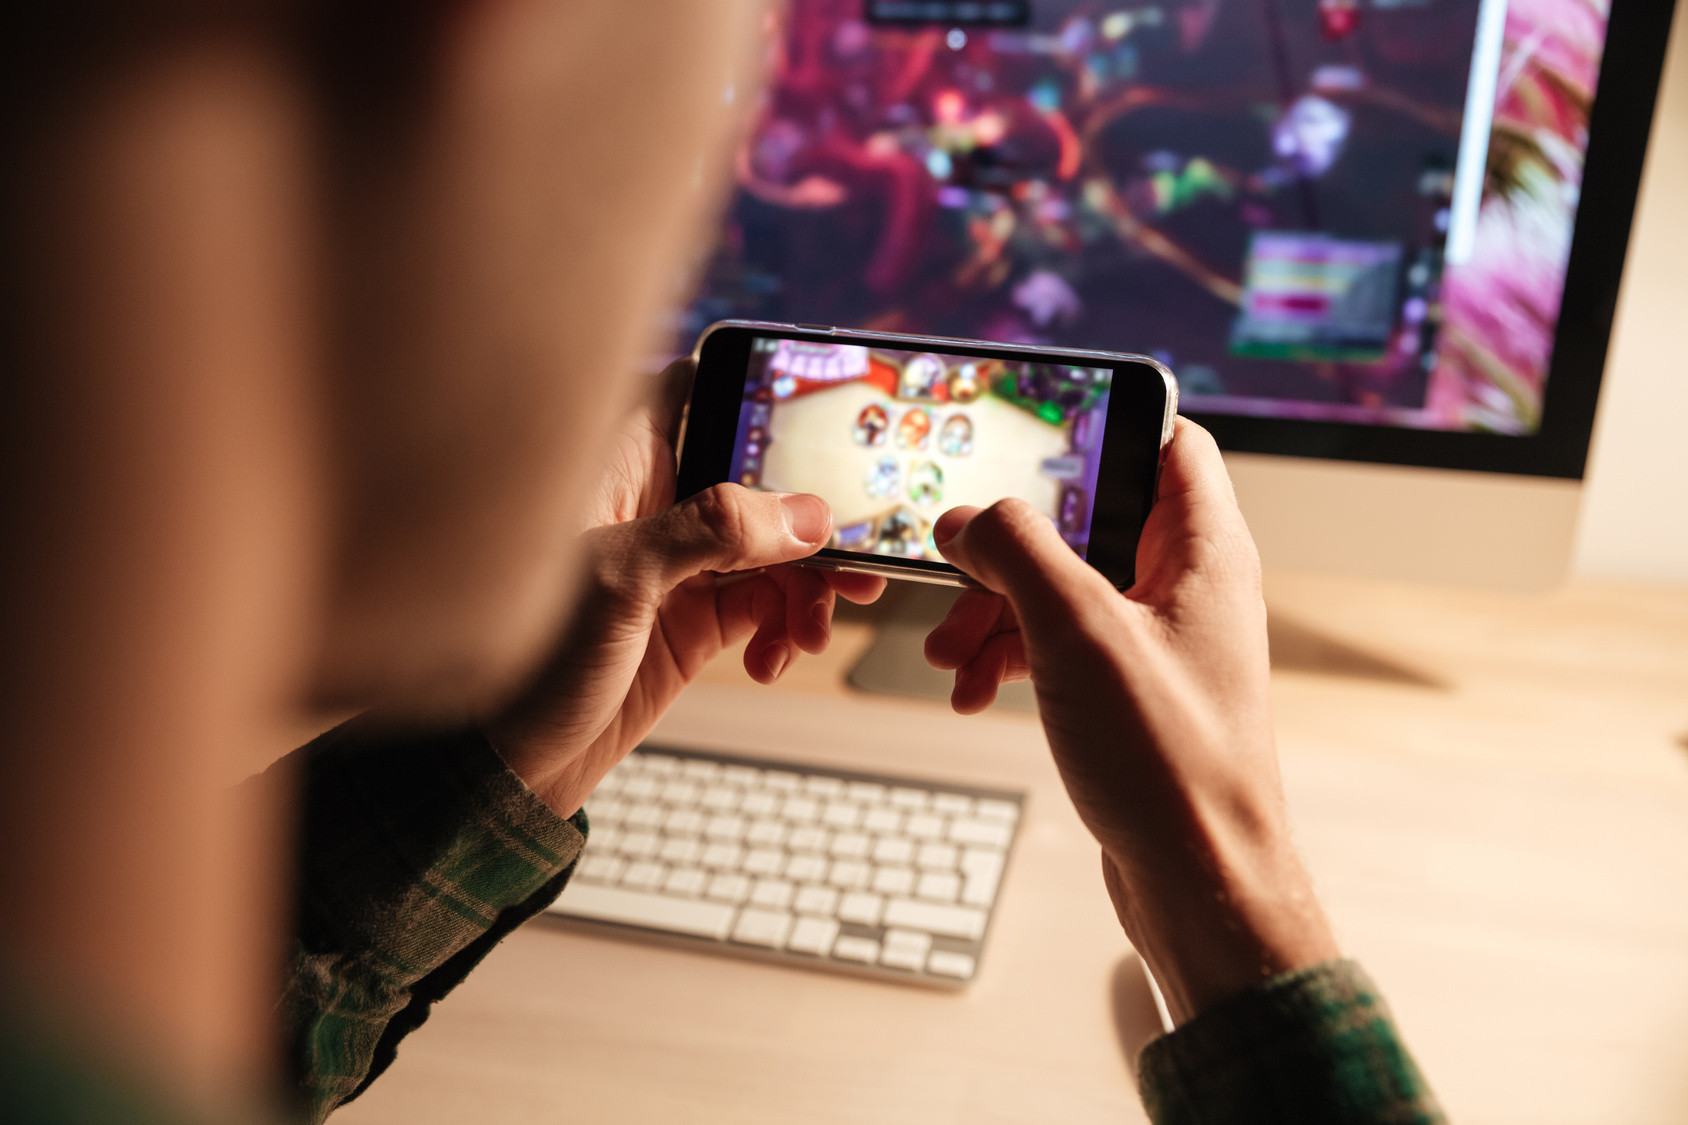 19 milliards de dollars de chiffre d'affaires pour le gaming sur mobile au second semestre